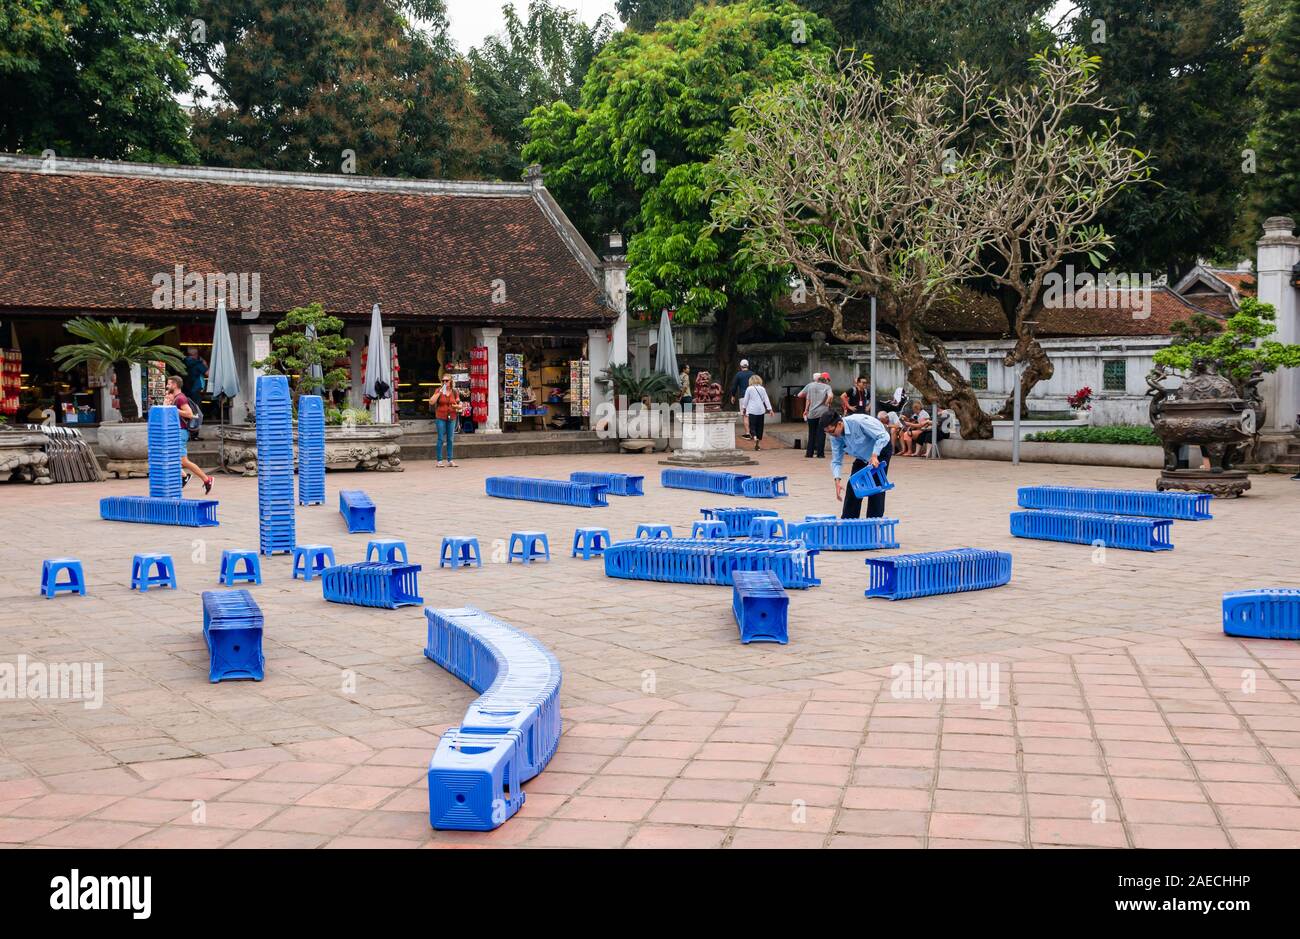 Preparazione per il caso con sgabelli in plastica nel cortile, Tempio della Letteratura, Hanoi, Vietnam Foto Stock